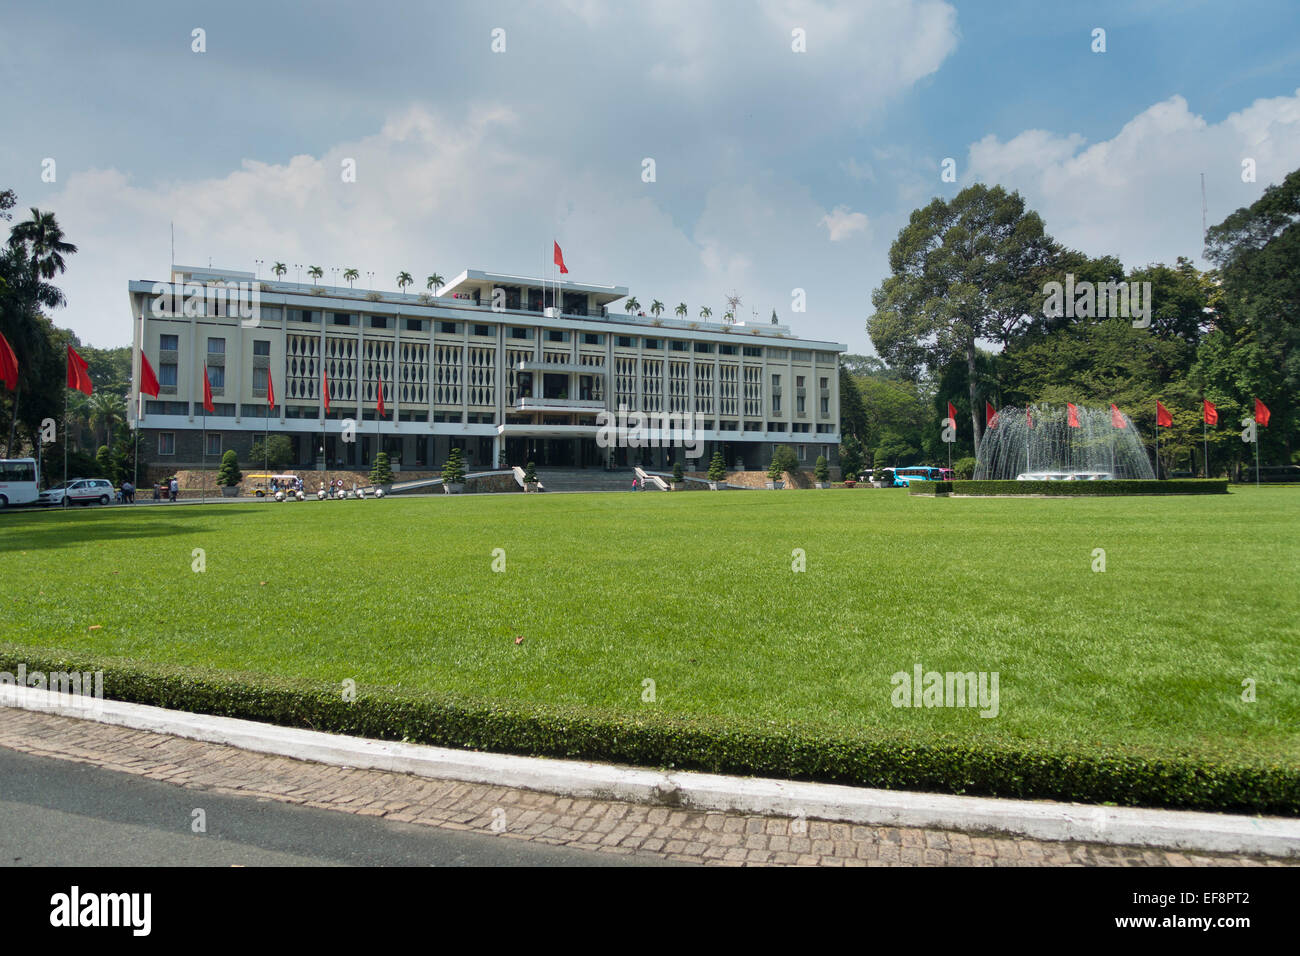 Palais de la réunification, de 1955 à 1975 Palais de l'indépendance, célèbre monument, Ho Chi Minh City, Vietnam Banque D'Images